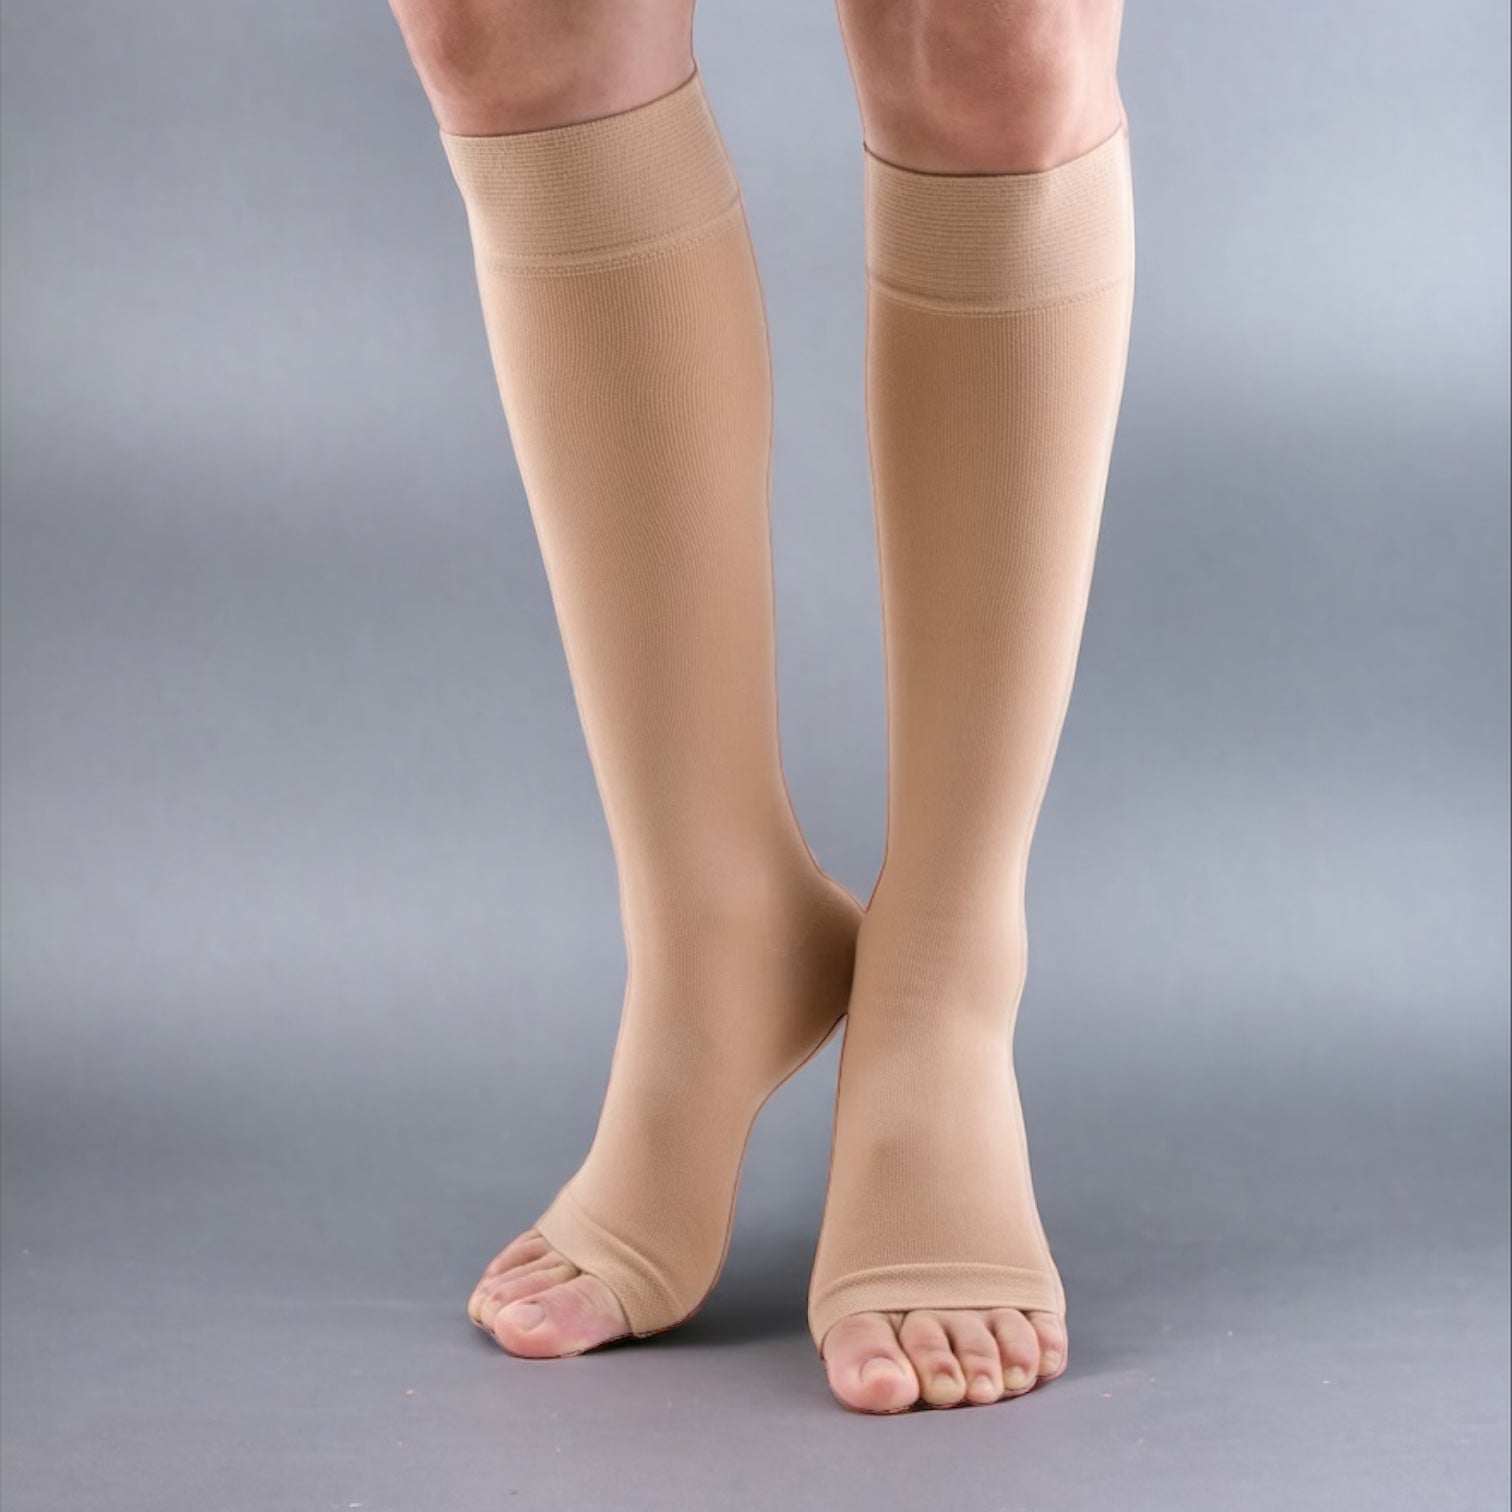 Jaesoul Medical Certified Compression Socks